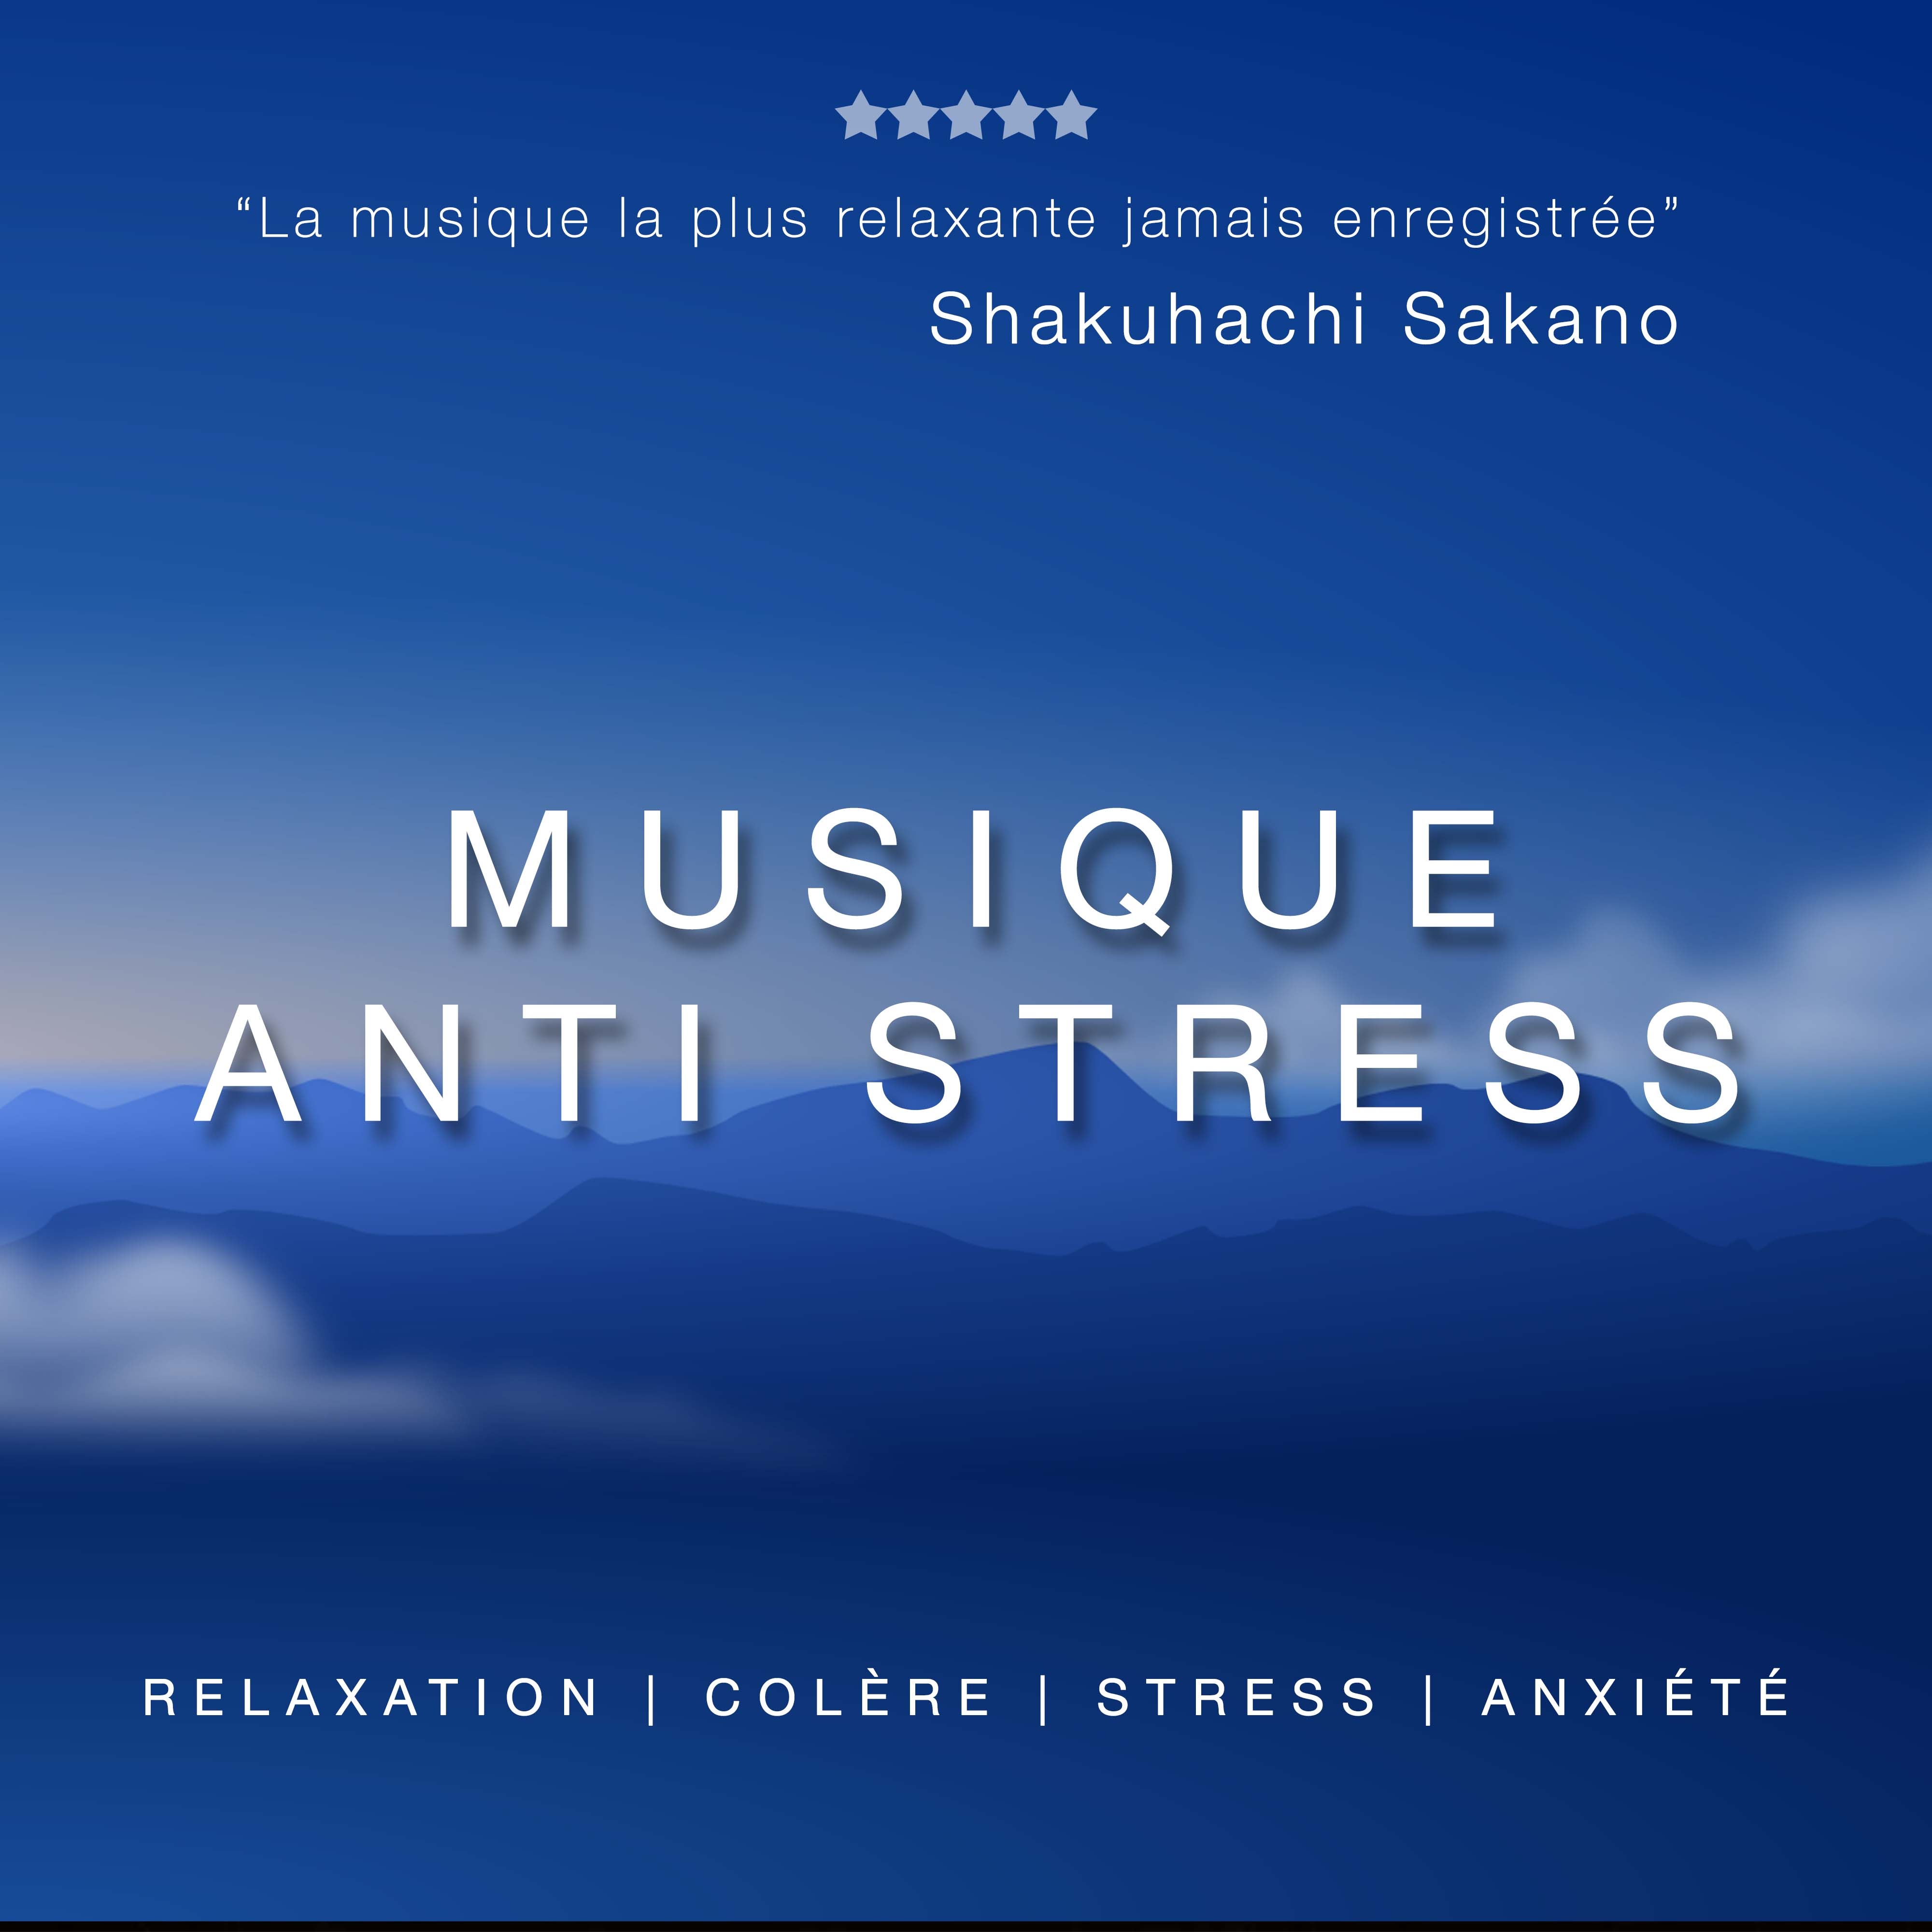 Musique Anti Stress: Musique de Relaxation, Musique Douce pour la Colère, le Stress et l'Anxiété